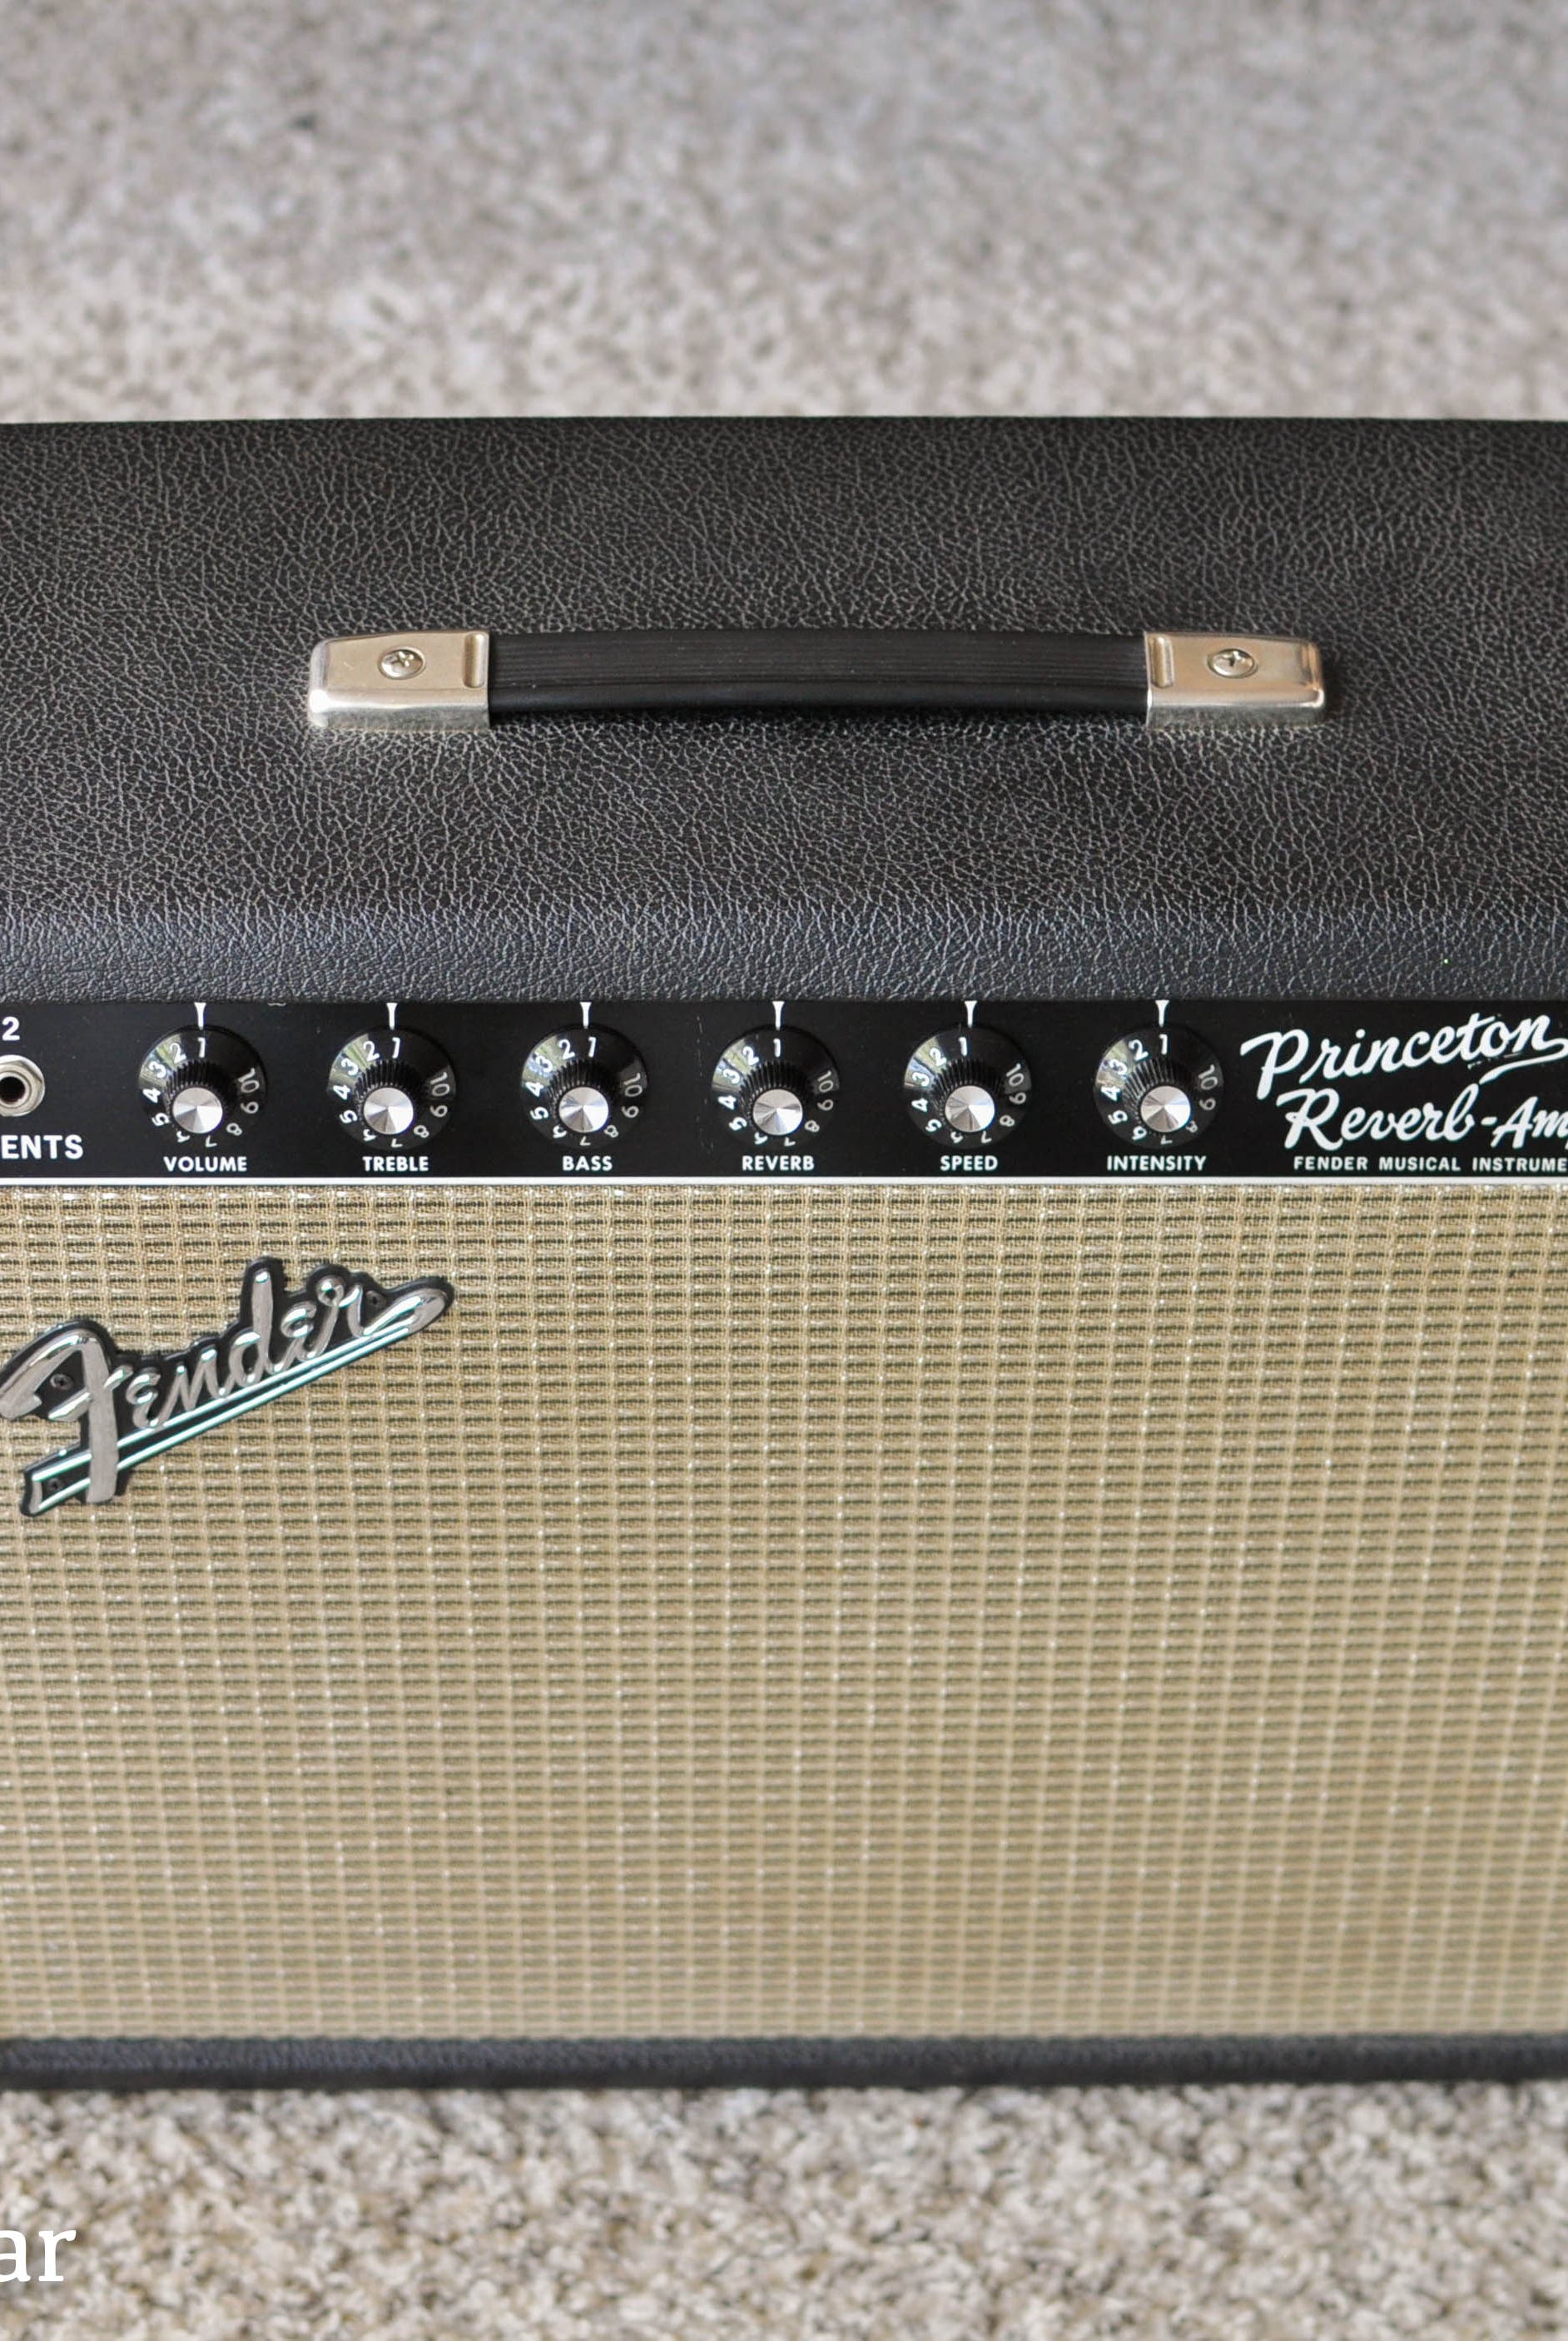 Fender Princeton Reverb guitar amp vintage 1965